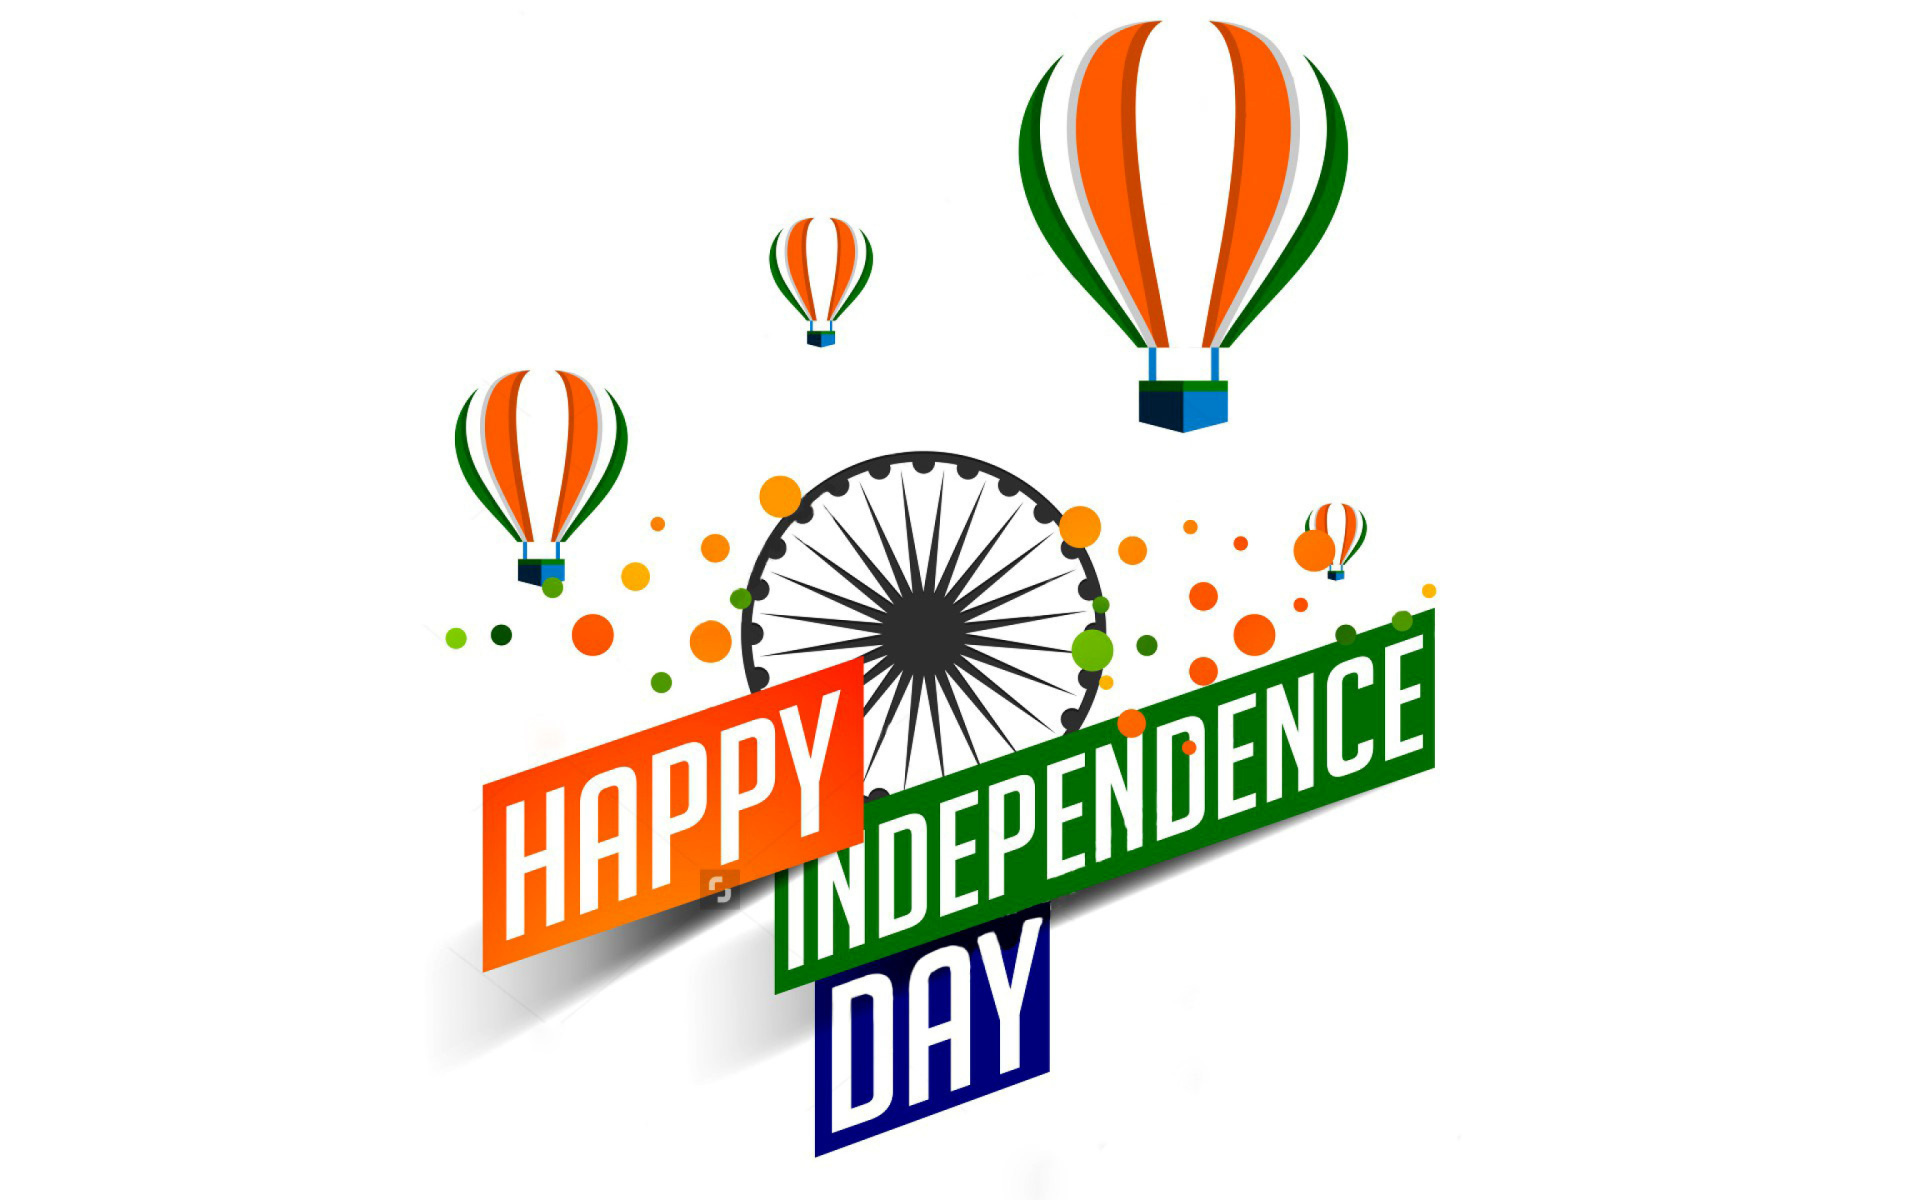 Обои Happy Independence Day of India 2016, 2017 1920x1200